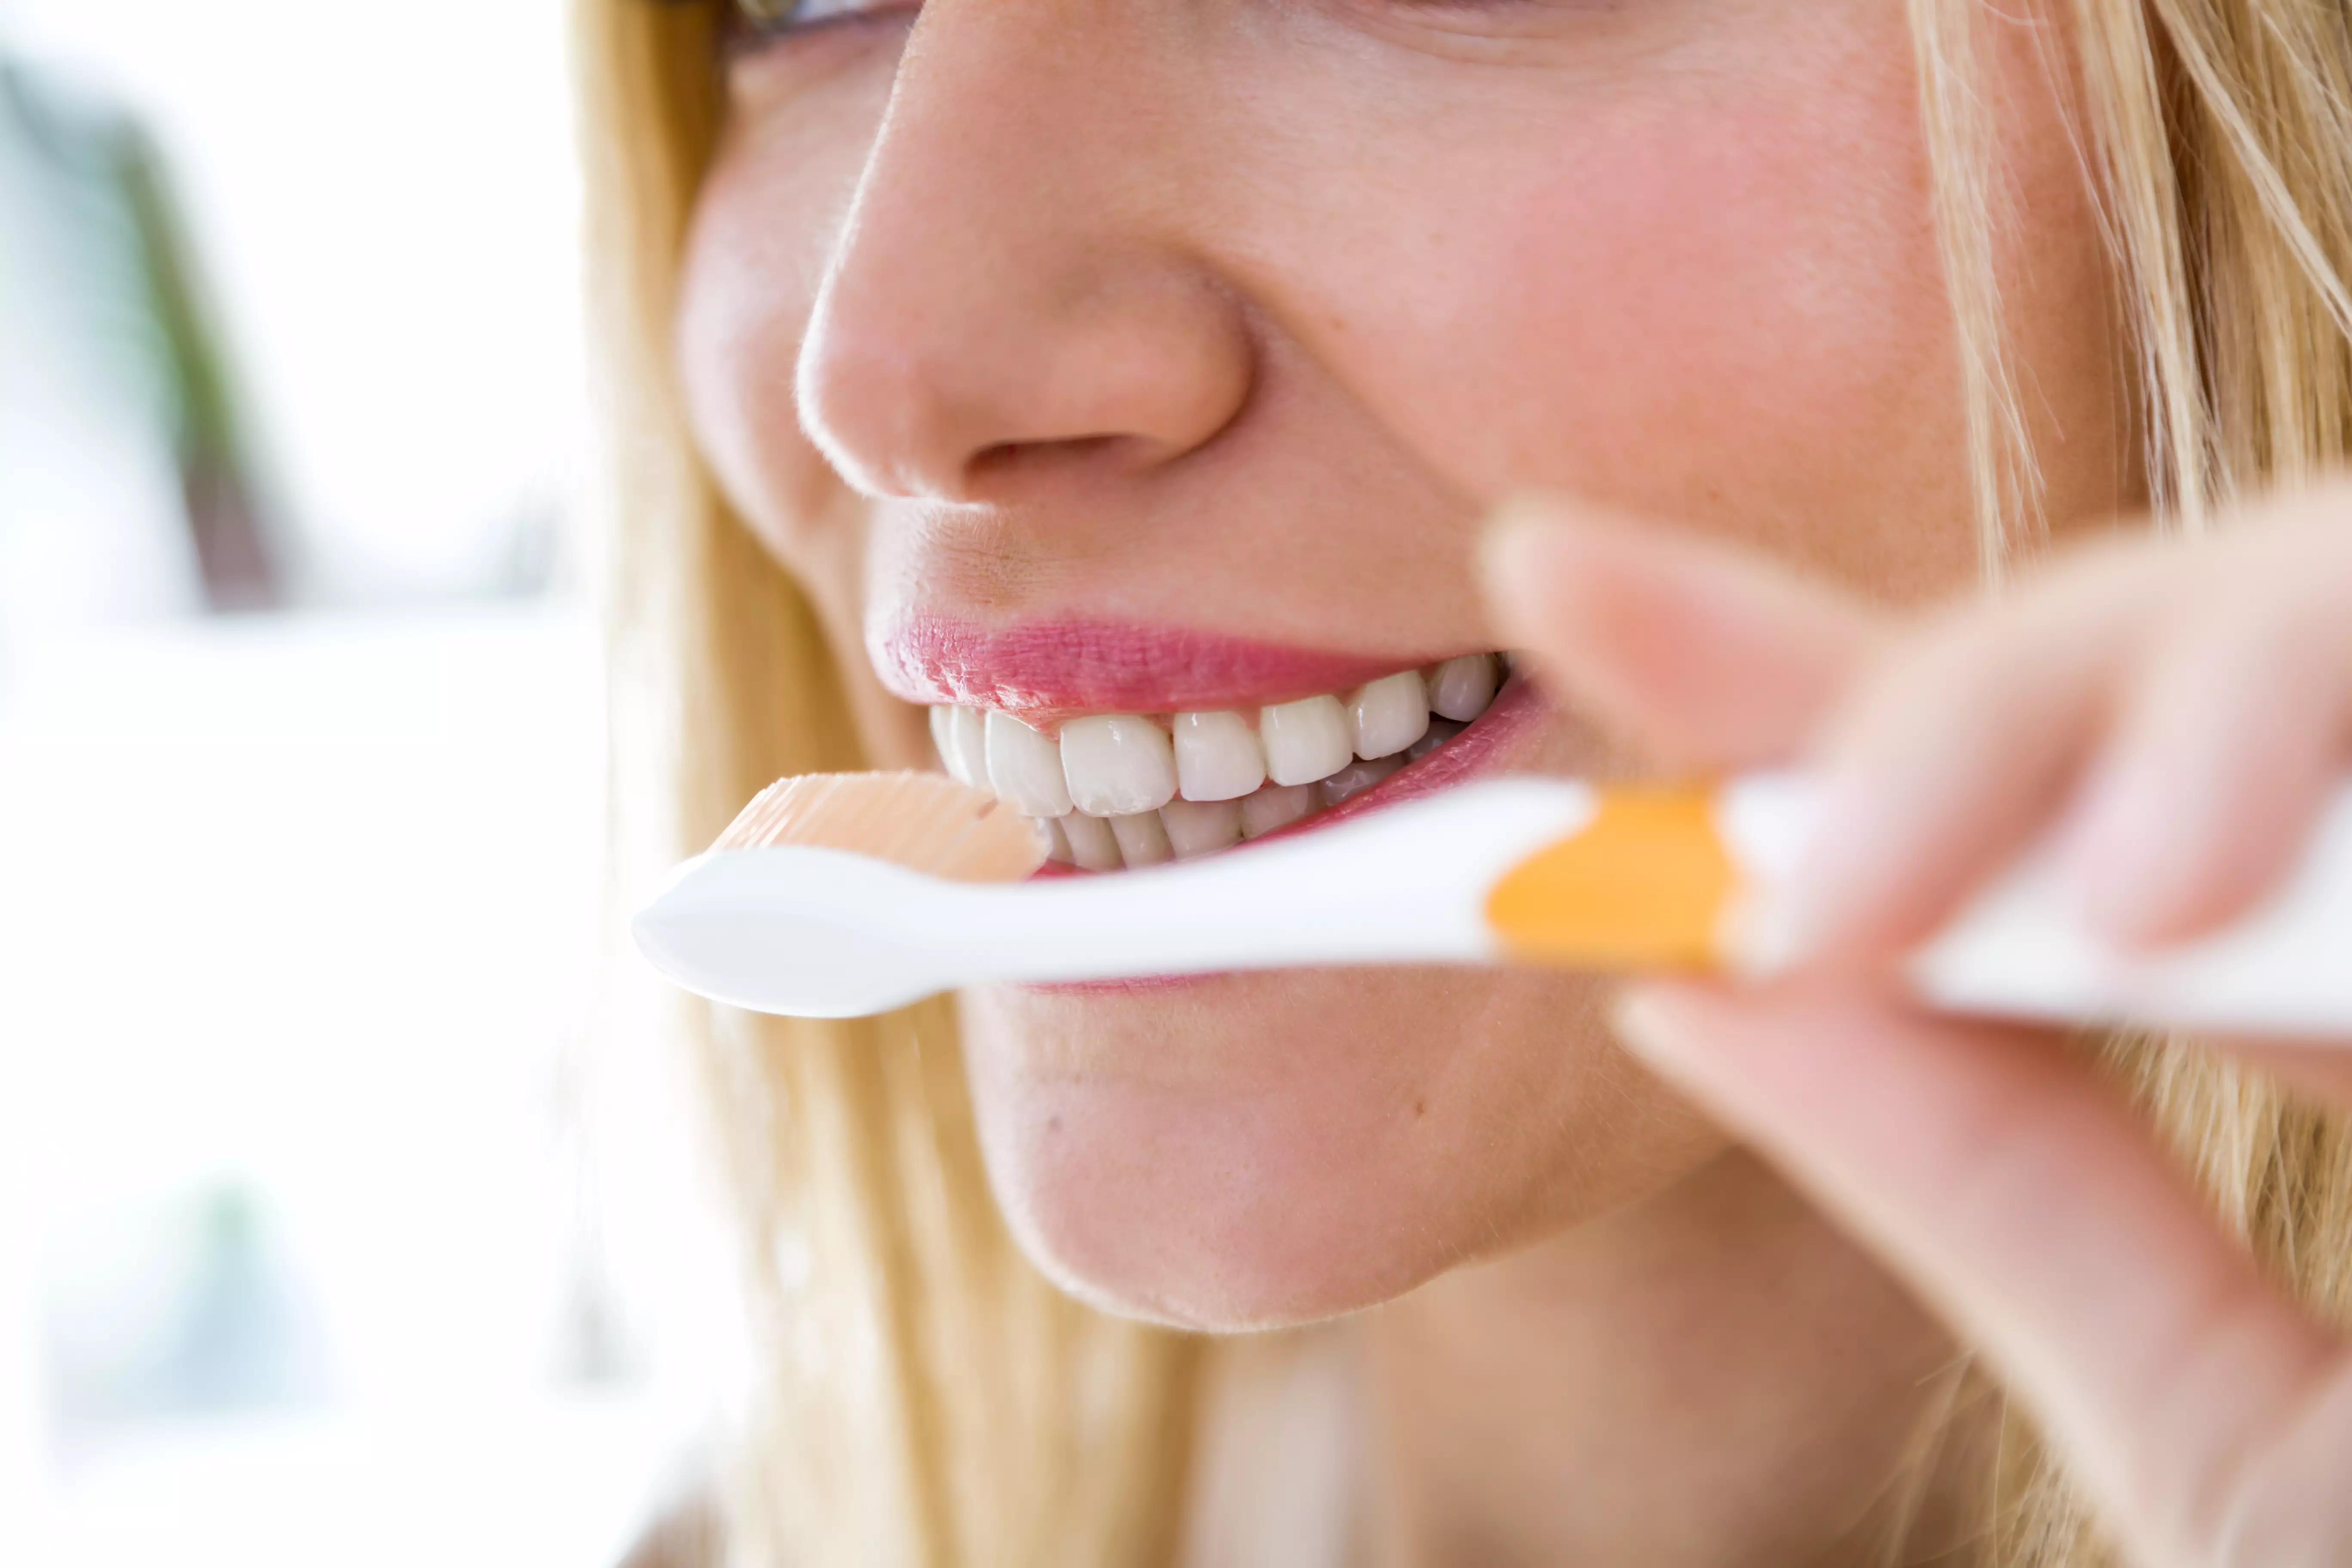 Коли чистите зуби простий щіткою, не потрібно тиснути занадто сильно